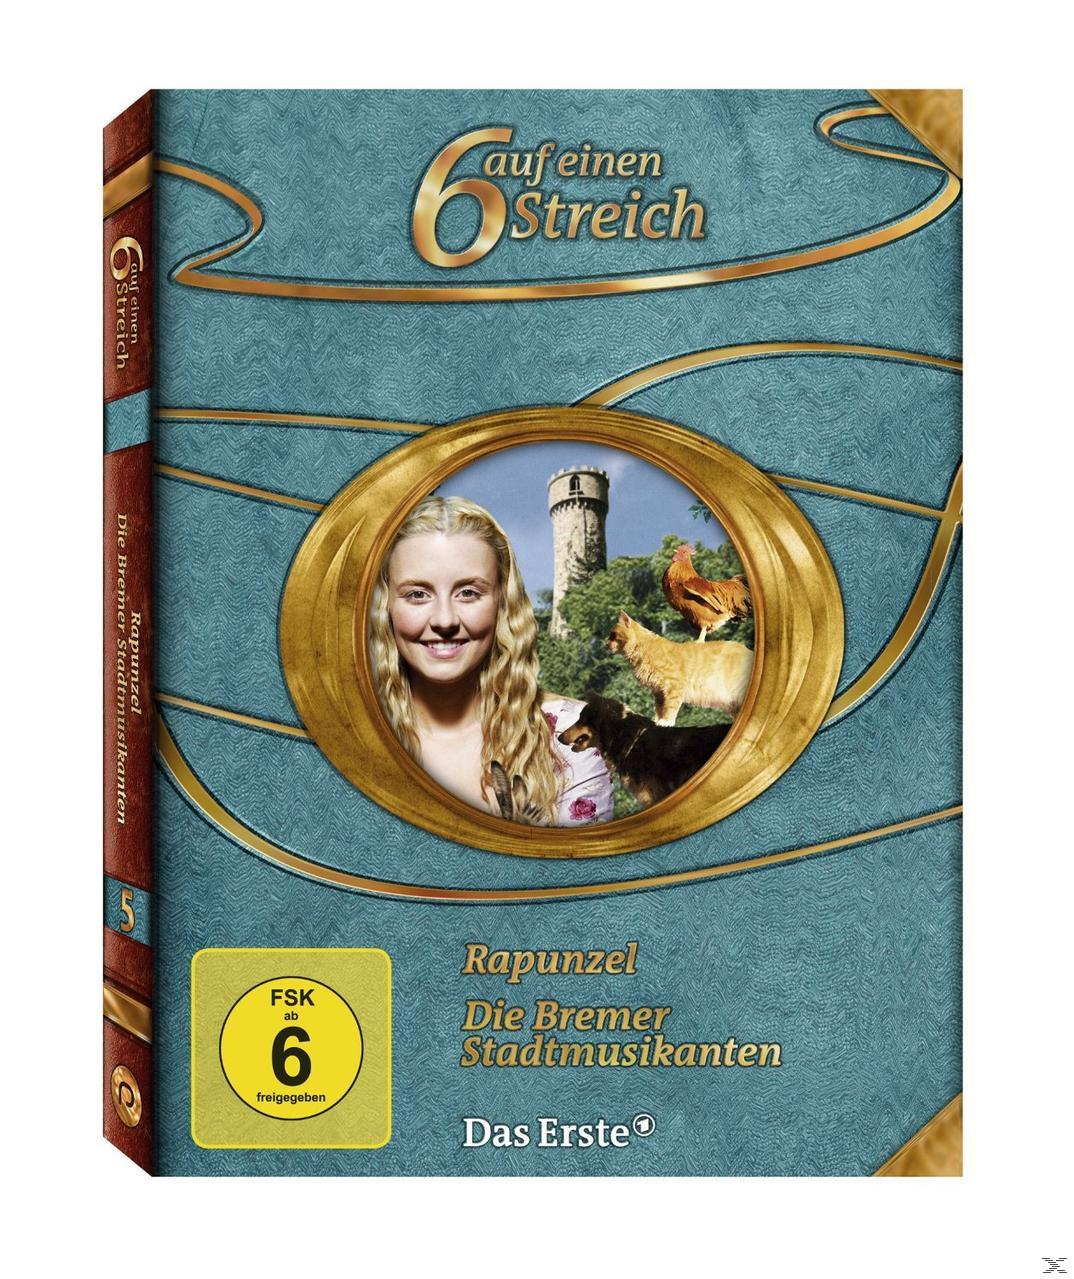 MÄRCHENBOX - SECHS AUF EINEN 5 STREICH (O-CARD) DVD